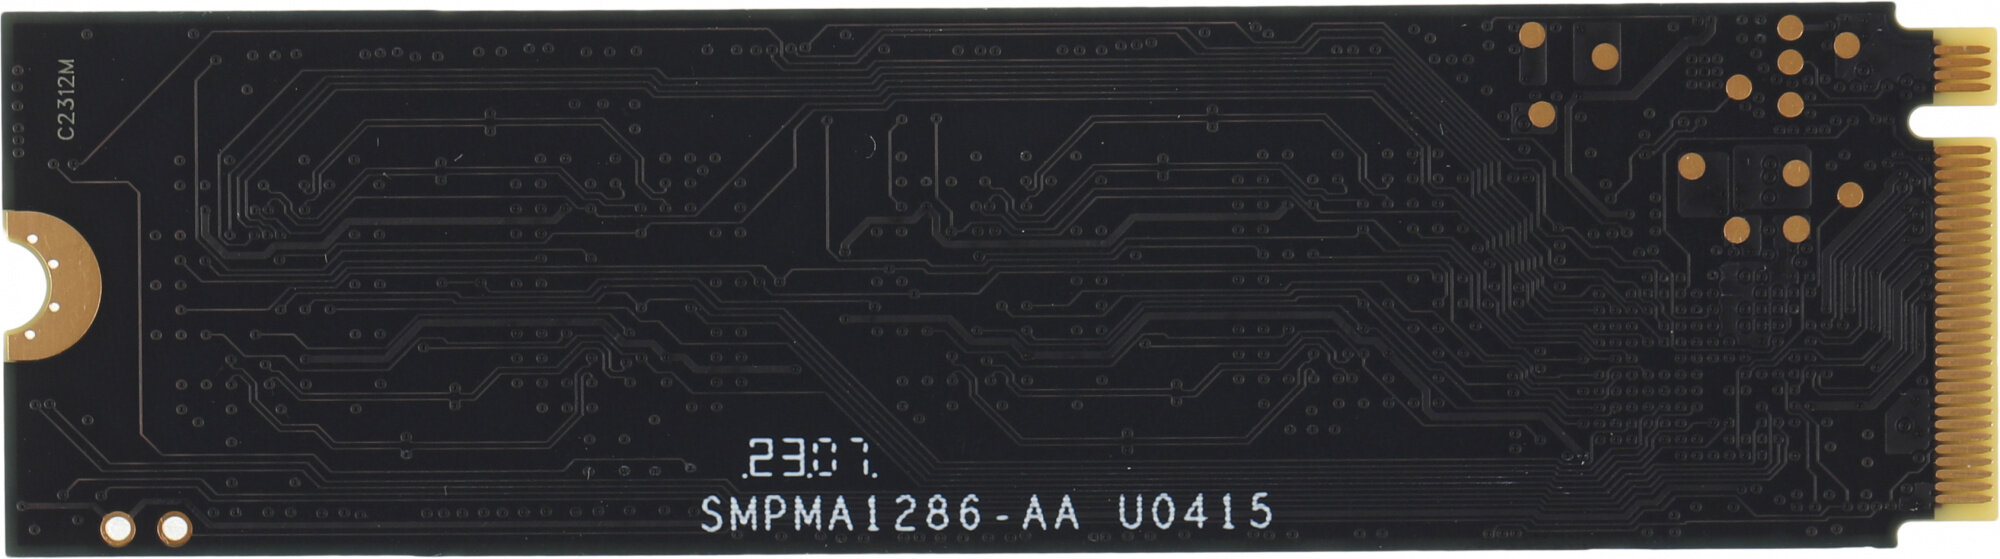 Твердотельный накопитель SSD Digma Mega M2 512GB M2 2280 PCle Gen 3 x 4 NVMe 3300 Мб/с